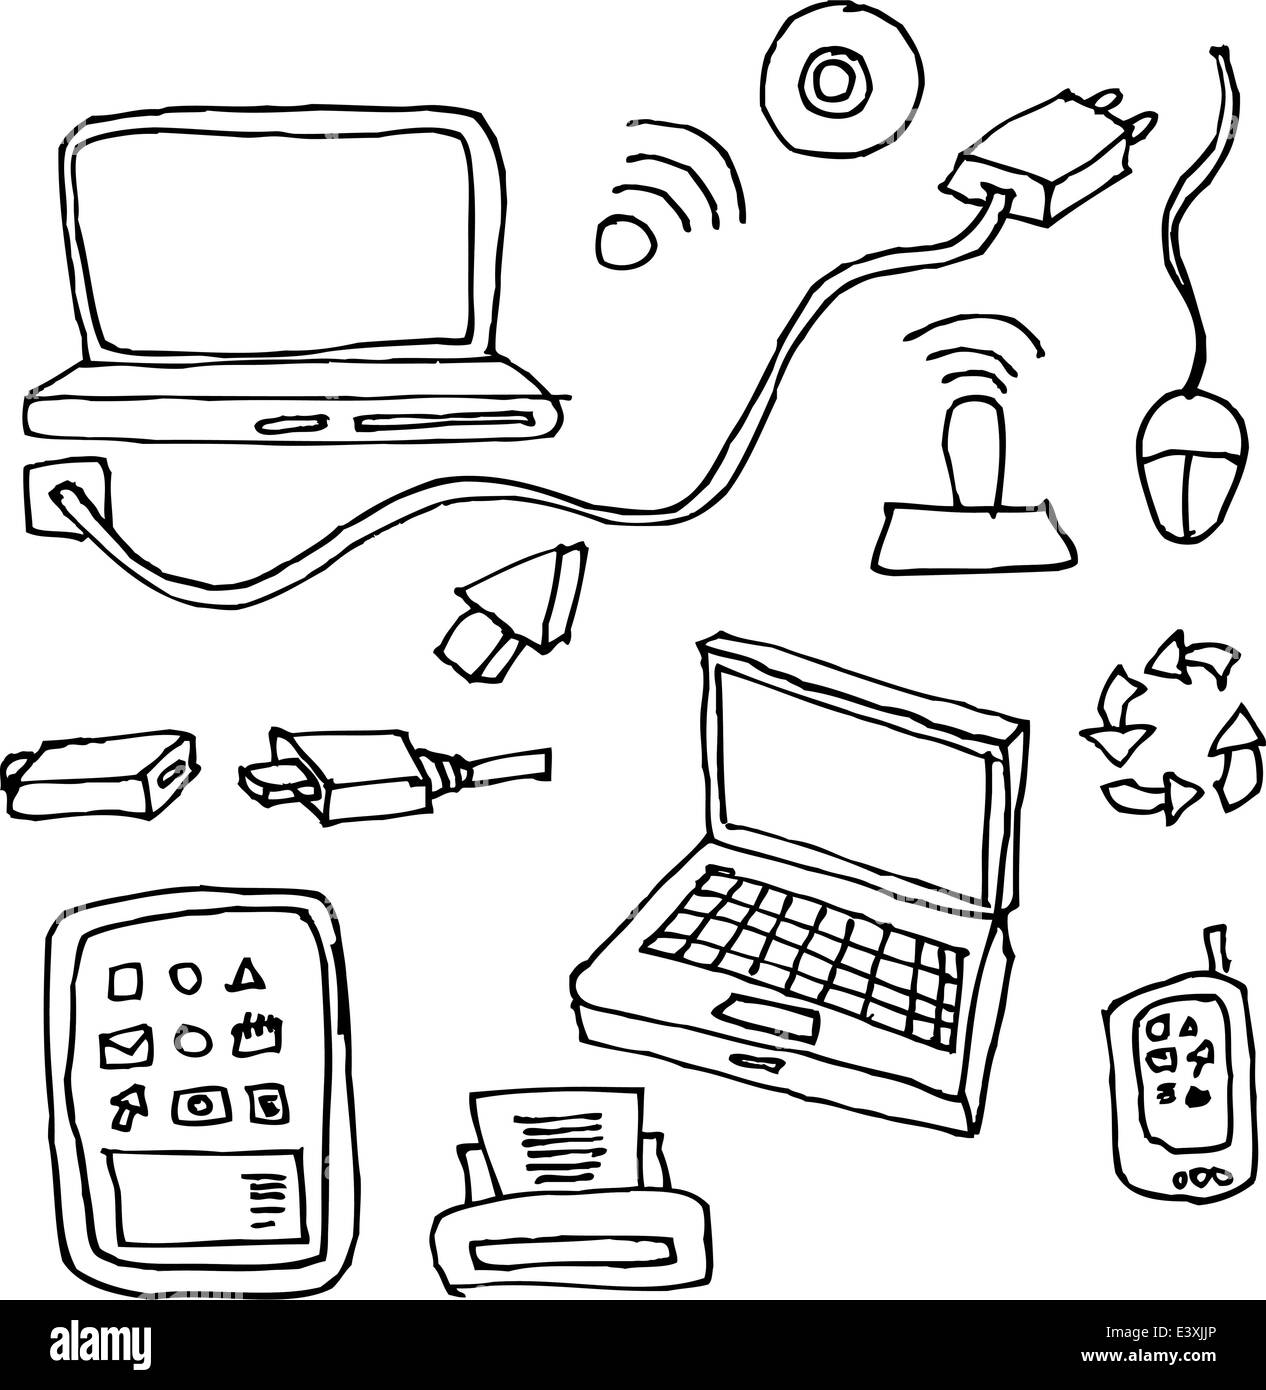 Dessin à la main des ordinateurs, tablettes, imprimantes, câbles et éléments de réseau pour la technologie Illustration de Vecteur